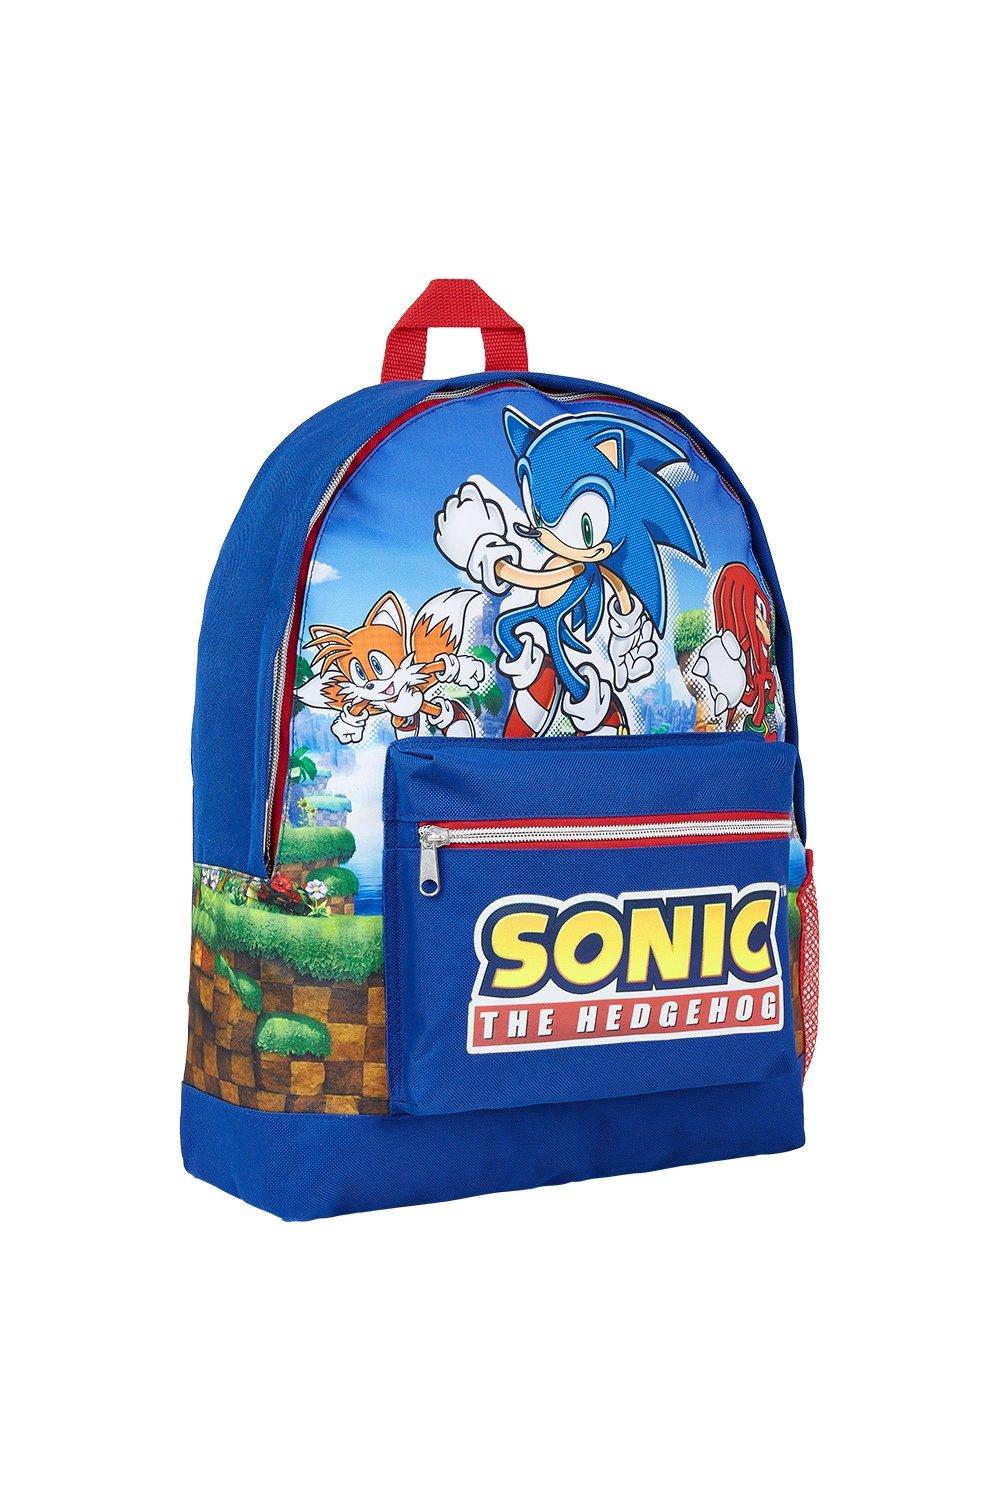 Рюкзак большой емкости Sonic the Hedgehog, синий cu chulainn ирландский берзер кельтский рюкзак для девочек и мальчиков дорожные рюкзаки для подростков школьная сумка